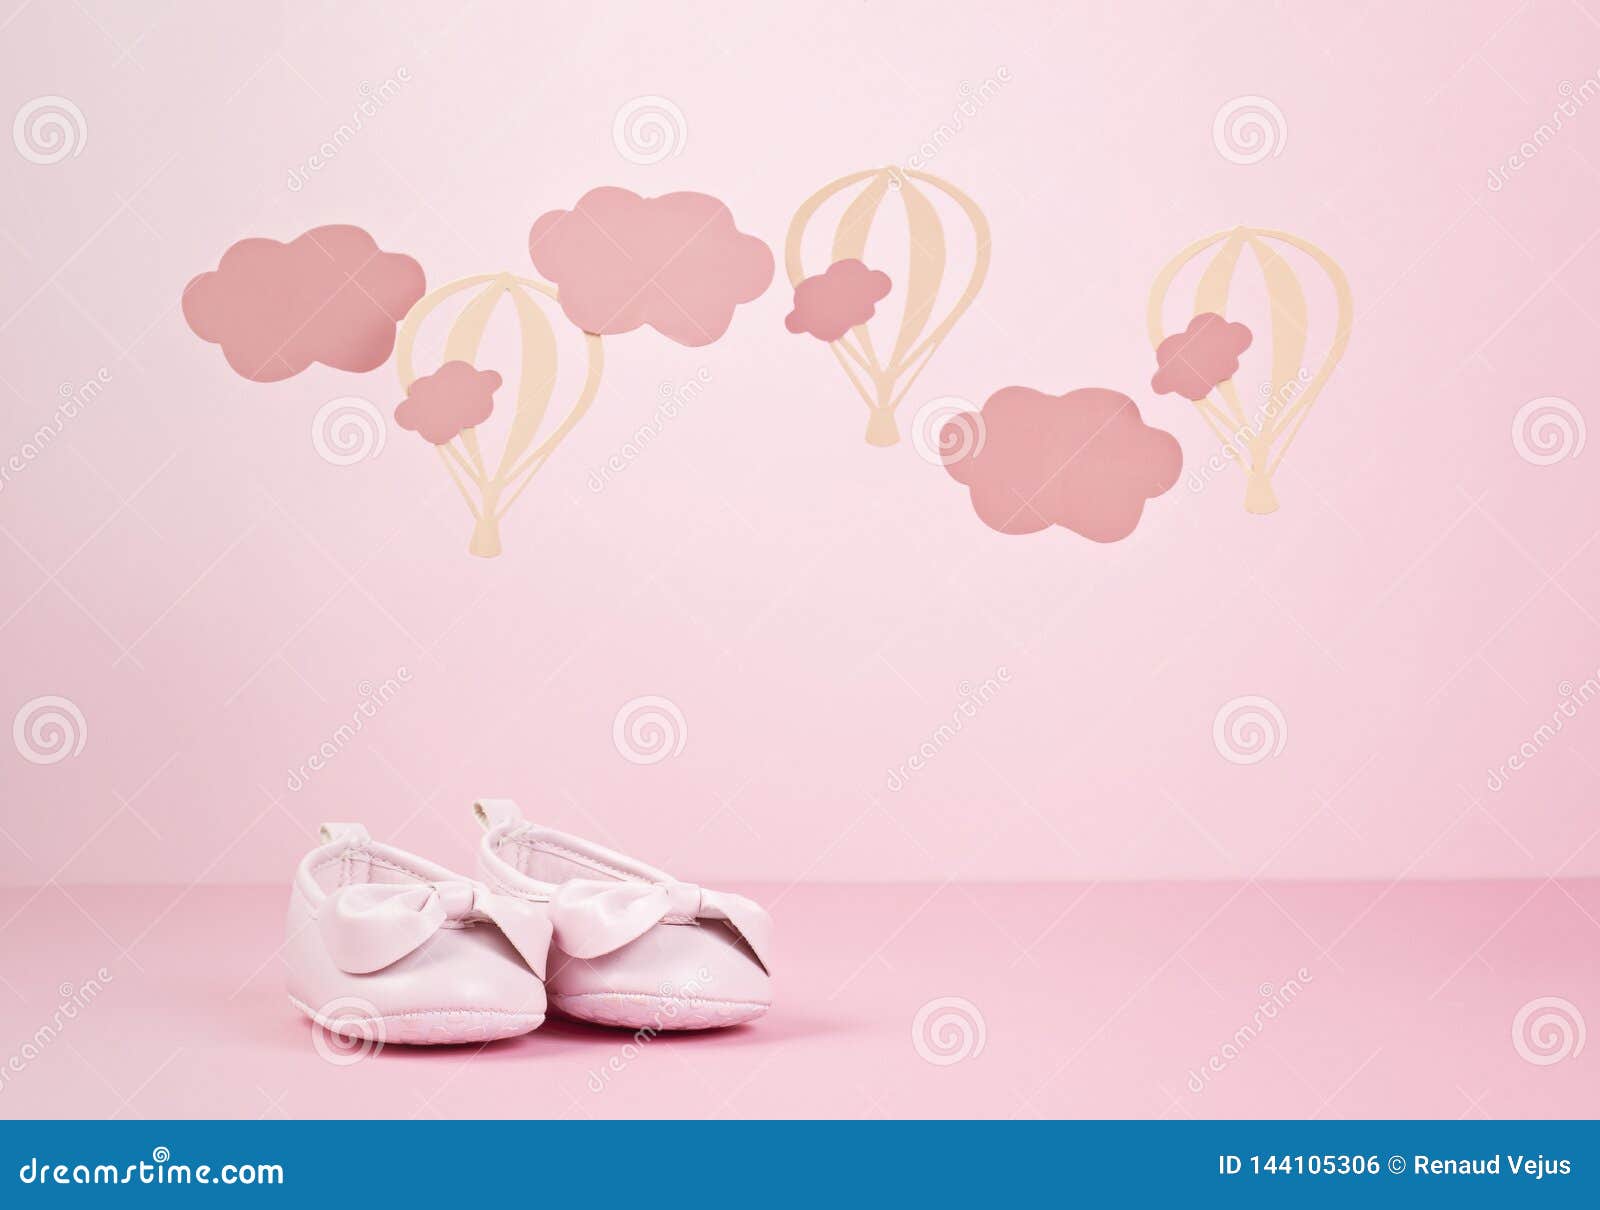 Bức ảnh về giày cho bé gái màu hồng dễ thương chắc chắn sẽ khiến những cô công chúa nhỏ của bạn phải mê mẩn. Sự kết hợp giữa màu hồng dịu dàng và kiểu dáng sang trọng sẽ khiến cho bất kỳ cô bé nào cũng muốn sở hữu. Hãy nhanh tay click vào ảnh để khám phá thêm những sản phẩm giày adorable cho bé nhà bạn nhé!